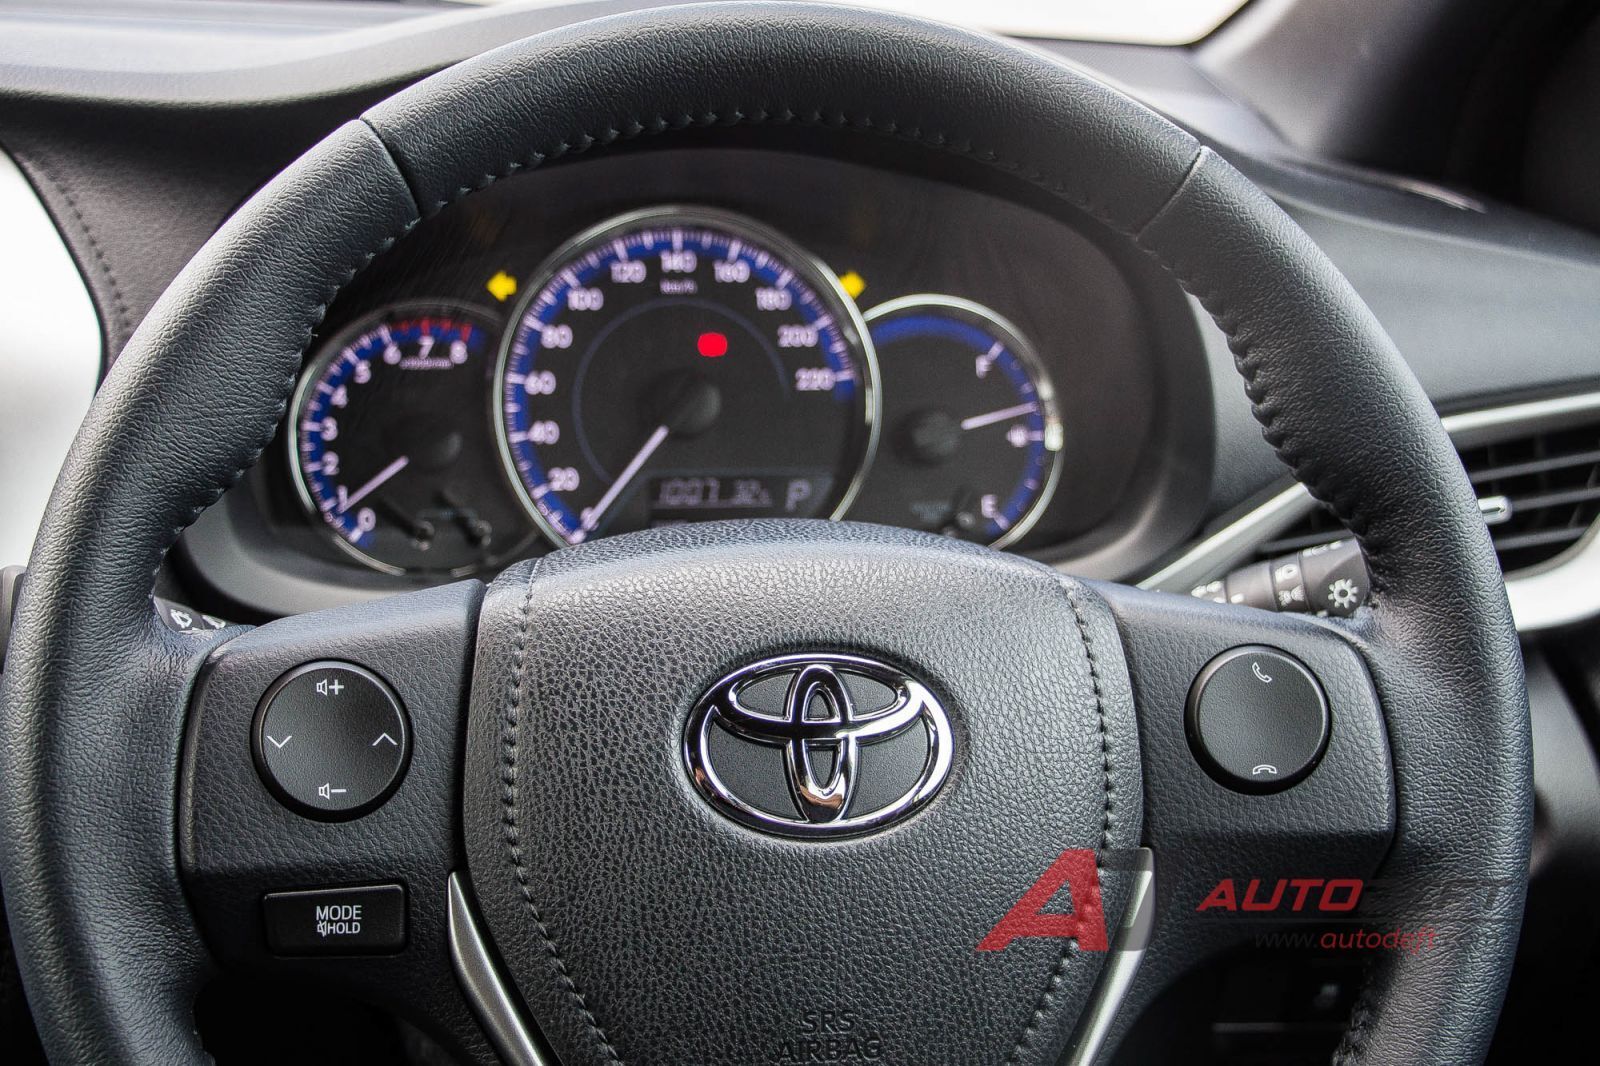 ย้อนกลับไปเมื่อปี 2006 ที่ Toyota ได้เปิดตัวรถยนต์ Subcompact car แบบ 5 ประตู Hatchback ตัวใหม่อย่าง Toyota Yaris ก็เล่นเอาวัยรุ่นหลายคนชอบใจกับดีไซน์ที่แสนจะน่ารักของมันกันอย่างมาก จนมีการสั่งซื้อเพื่อเอามาวิ่งใช้งานบนถนนเป็นจำนวนไม่ใช่น้อย ซึ่งสมัยนั้นยังเป็นเครื่องยนต์ขนาด 1,500 ซีซี อยู่เลย